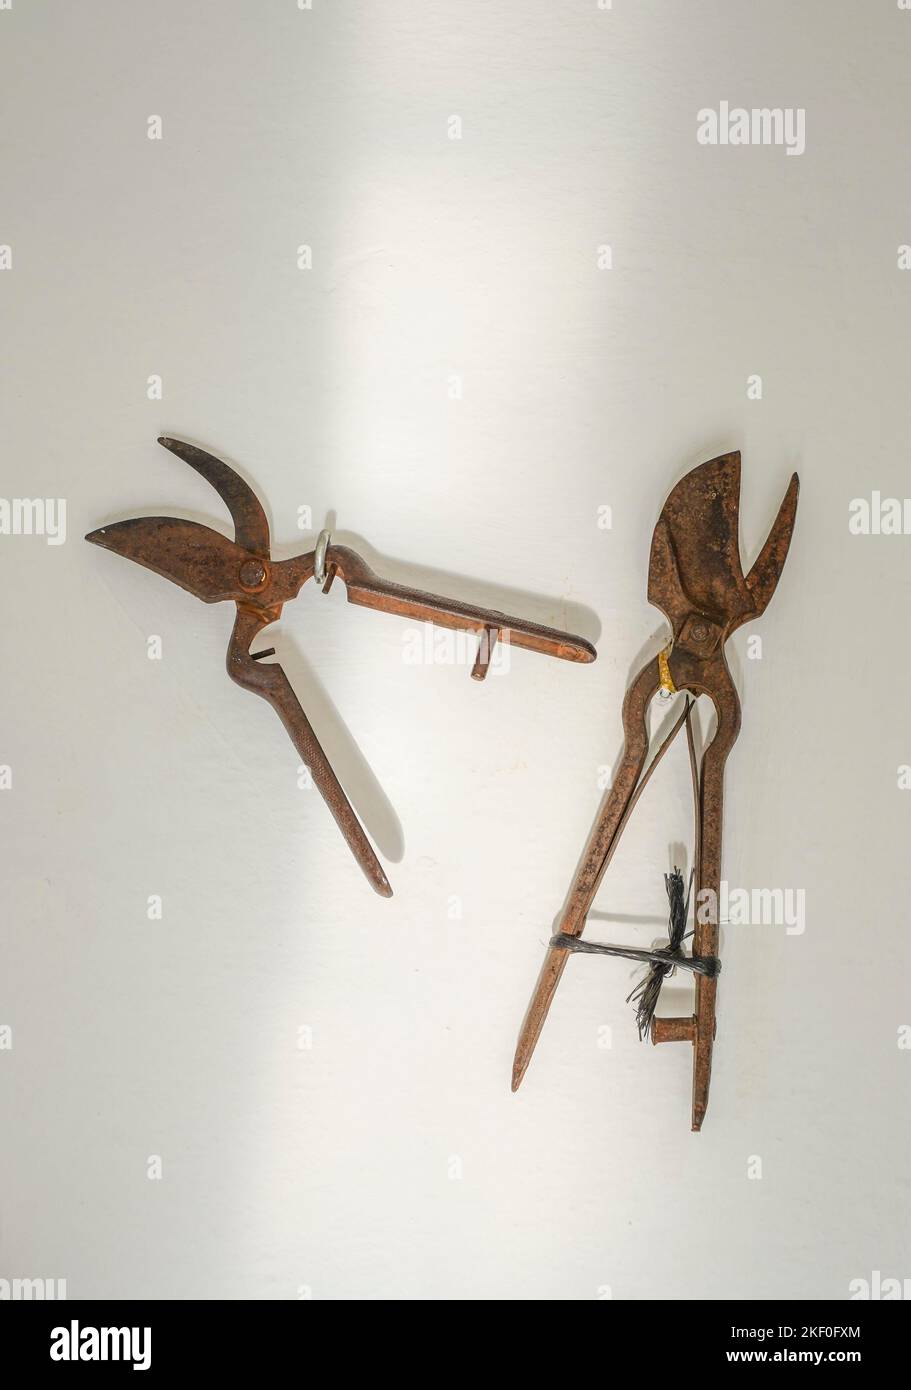 Vieux outils agricoles millésimés exposés au Musée ethnologique Mijas, Andalousie, Espagne Banque D'Images